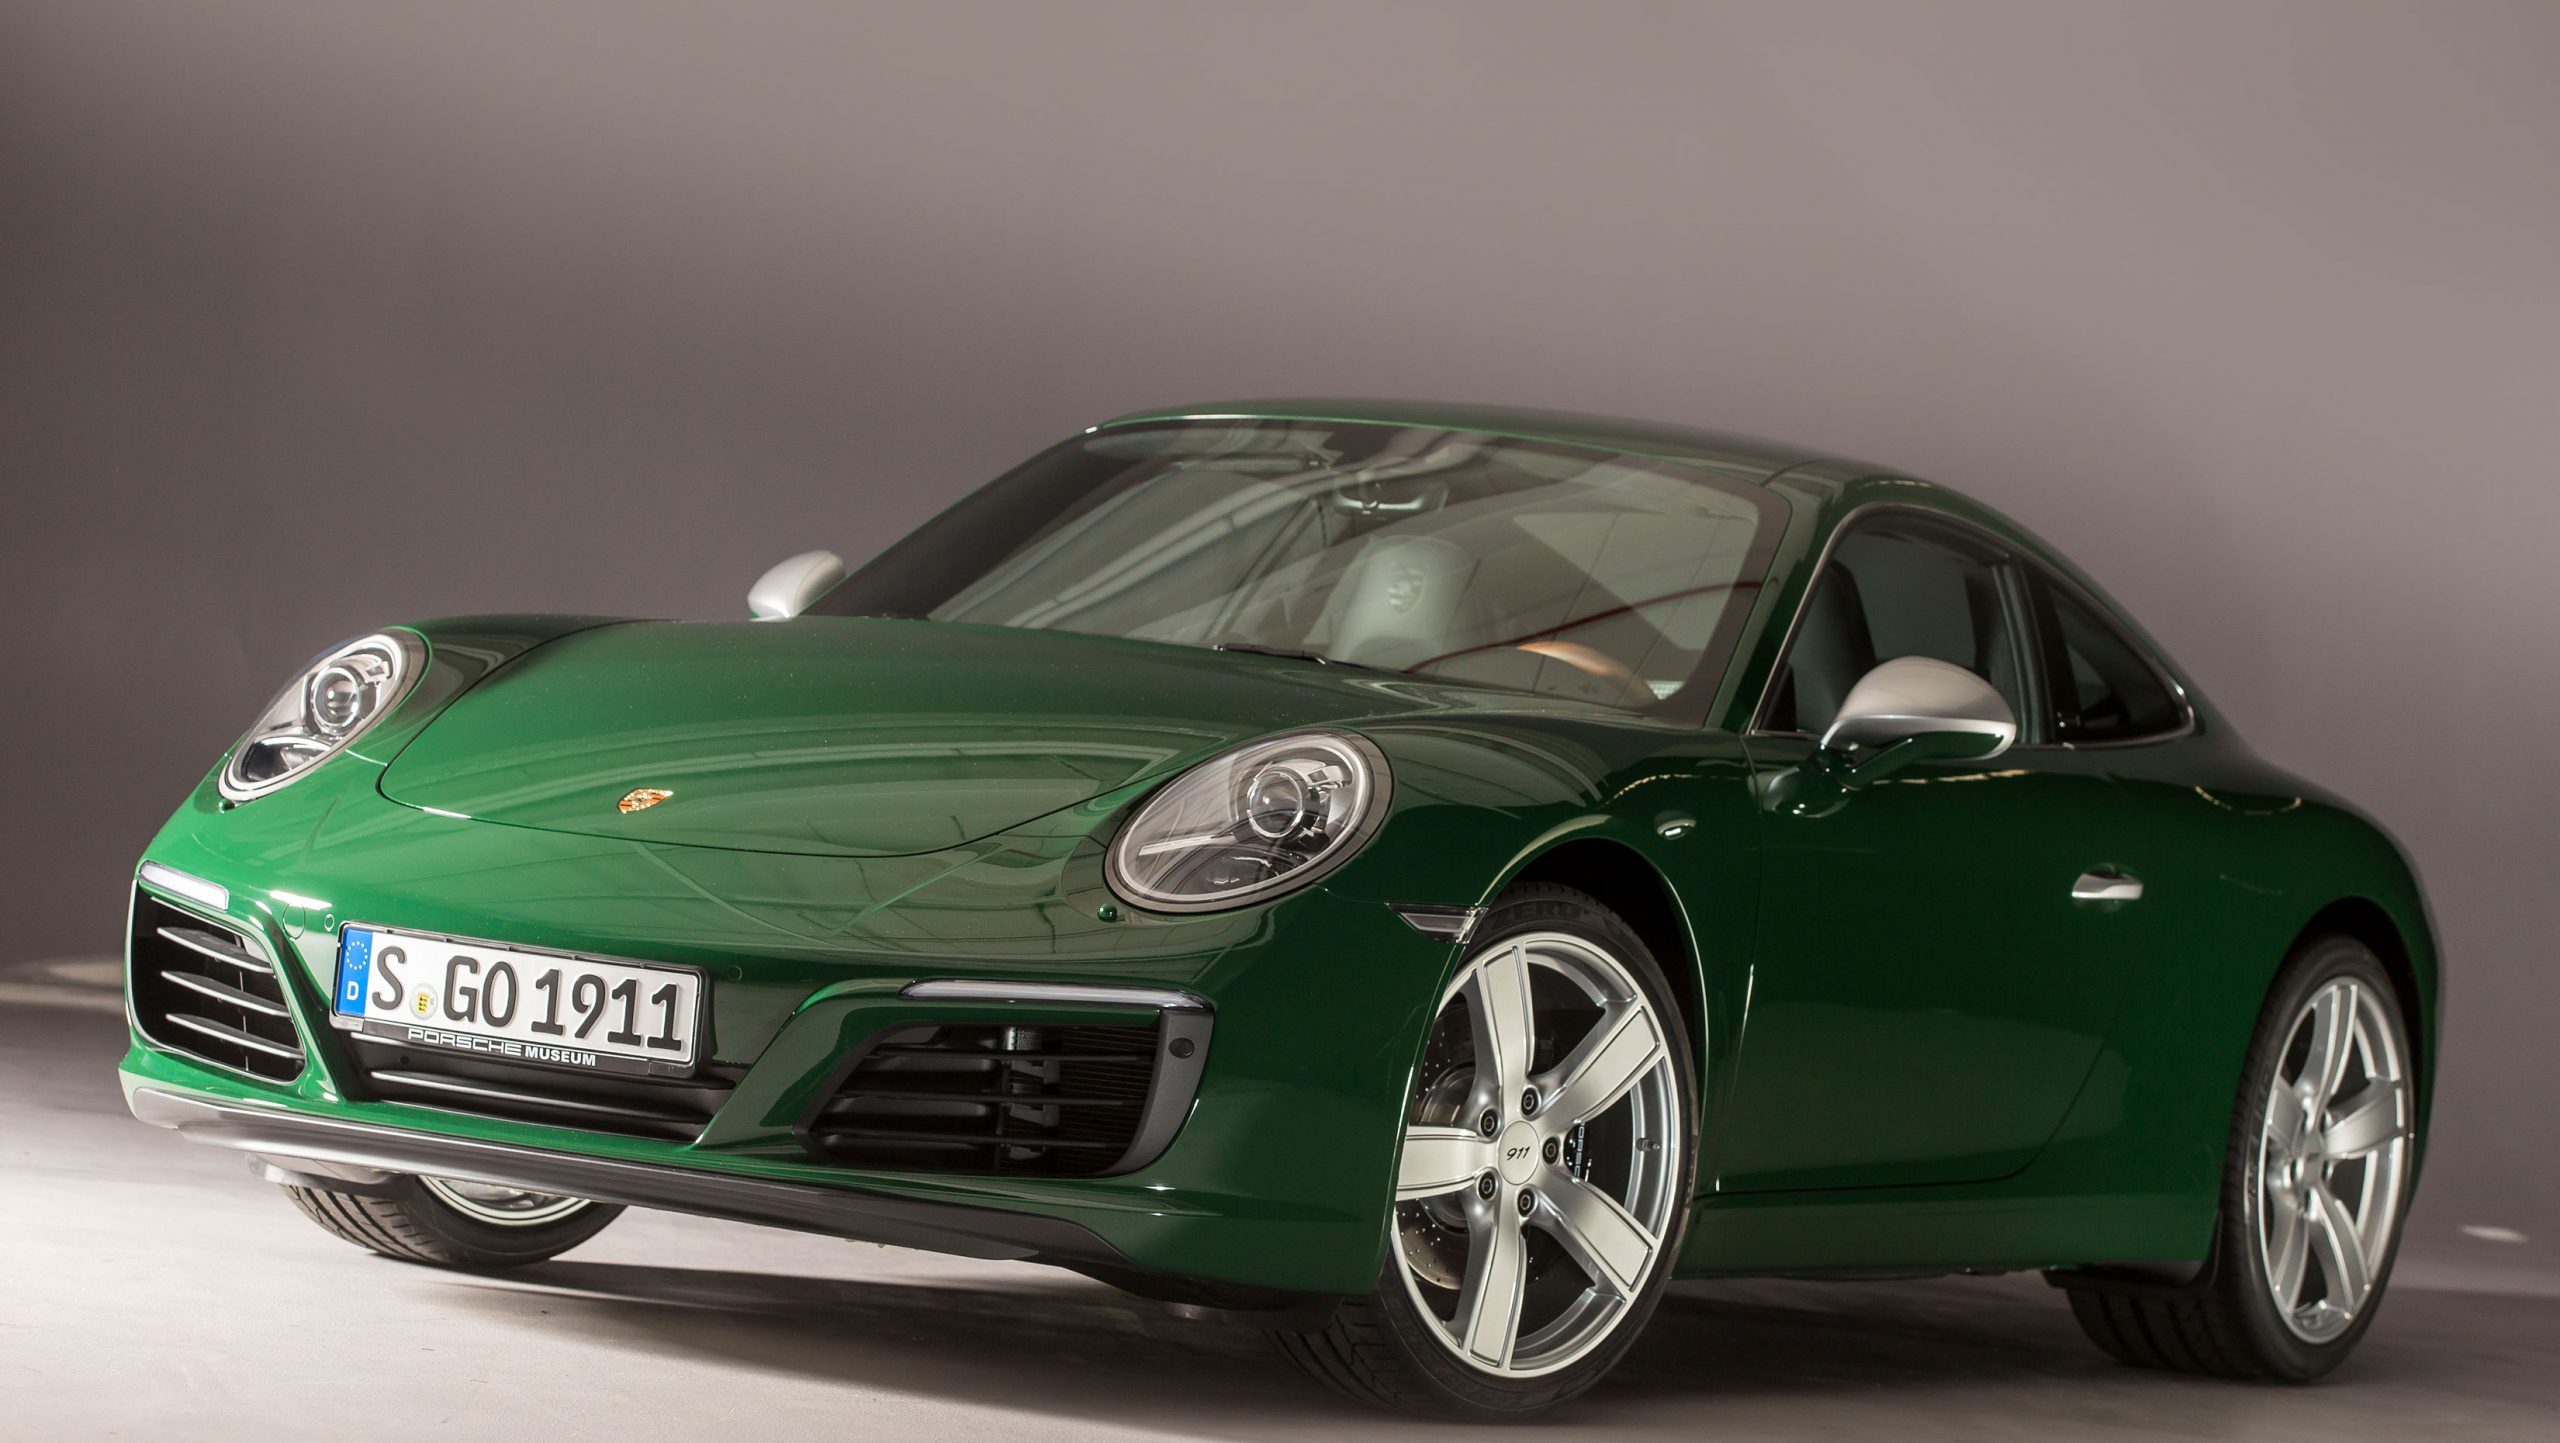 Porsche 1 million build special car (2) Concours Vehicles